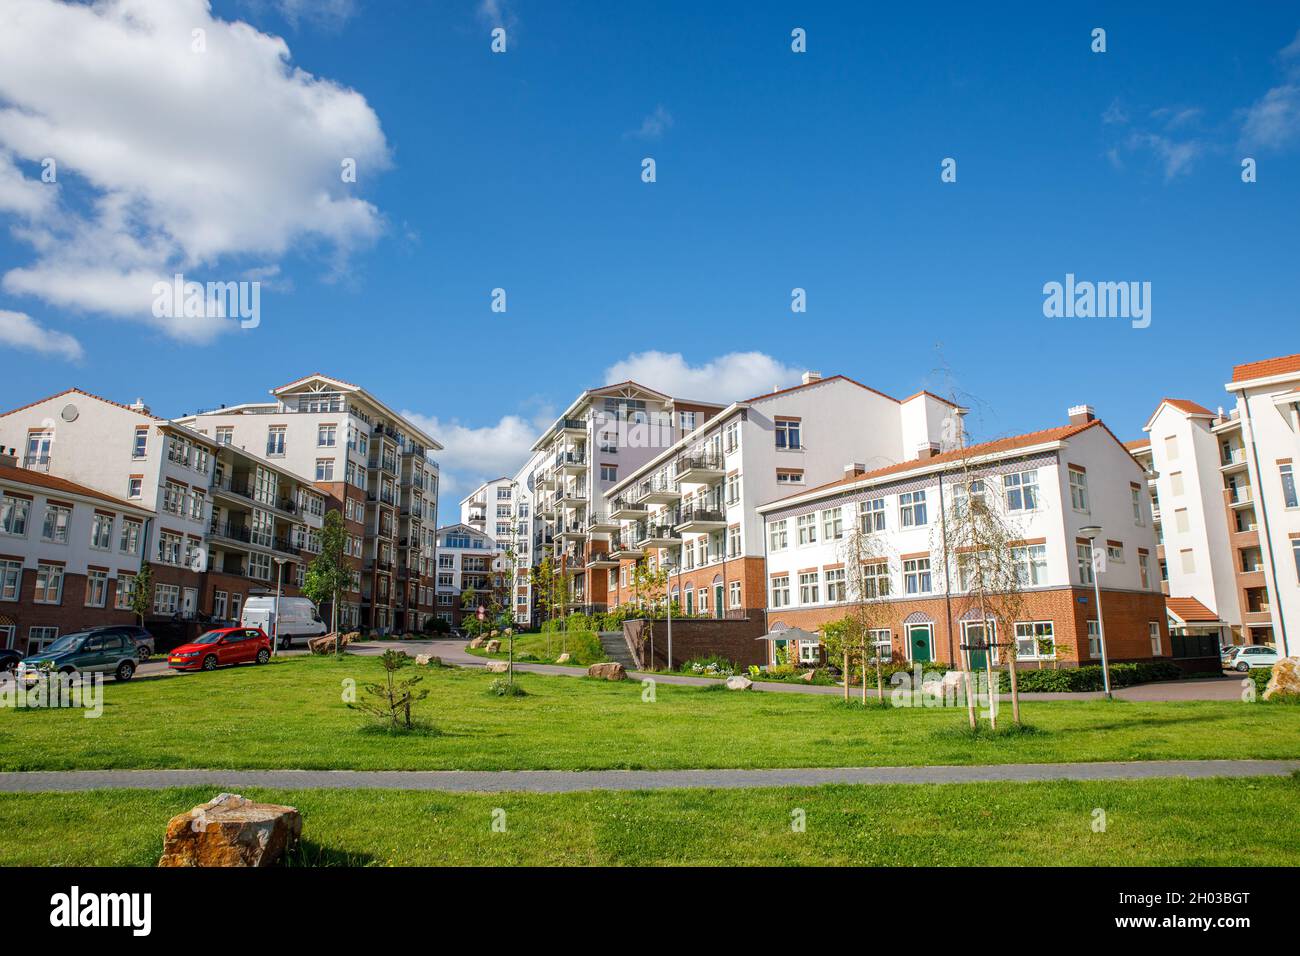 Complexe d'appartements 'de Bloem' dans le village sud-néerlandais de Rijnsburg aux pays-Bas.Un jour bleu nuageux en été.Construire dans la forme d'un Banque D'Images